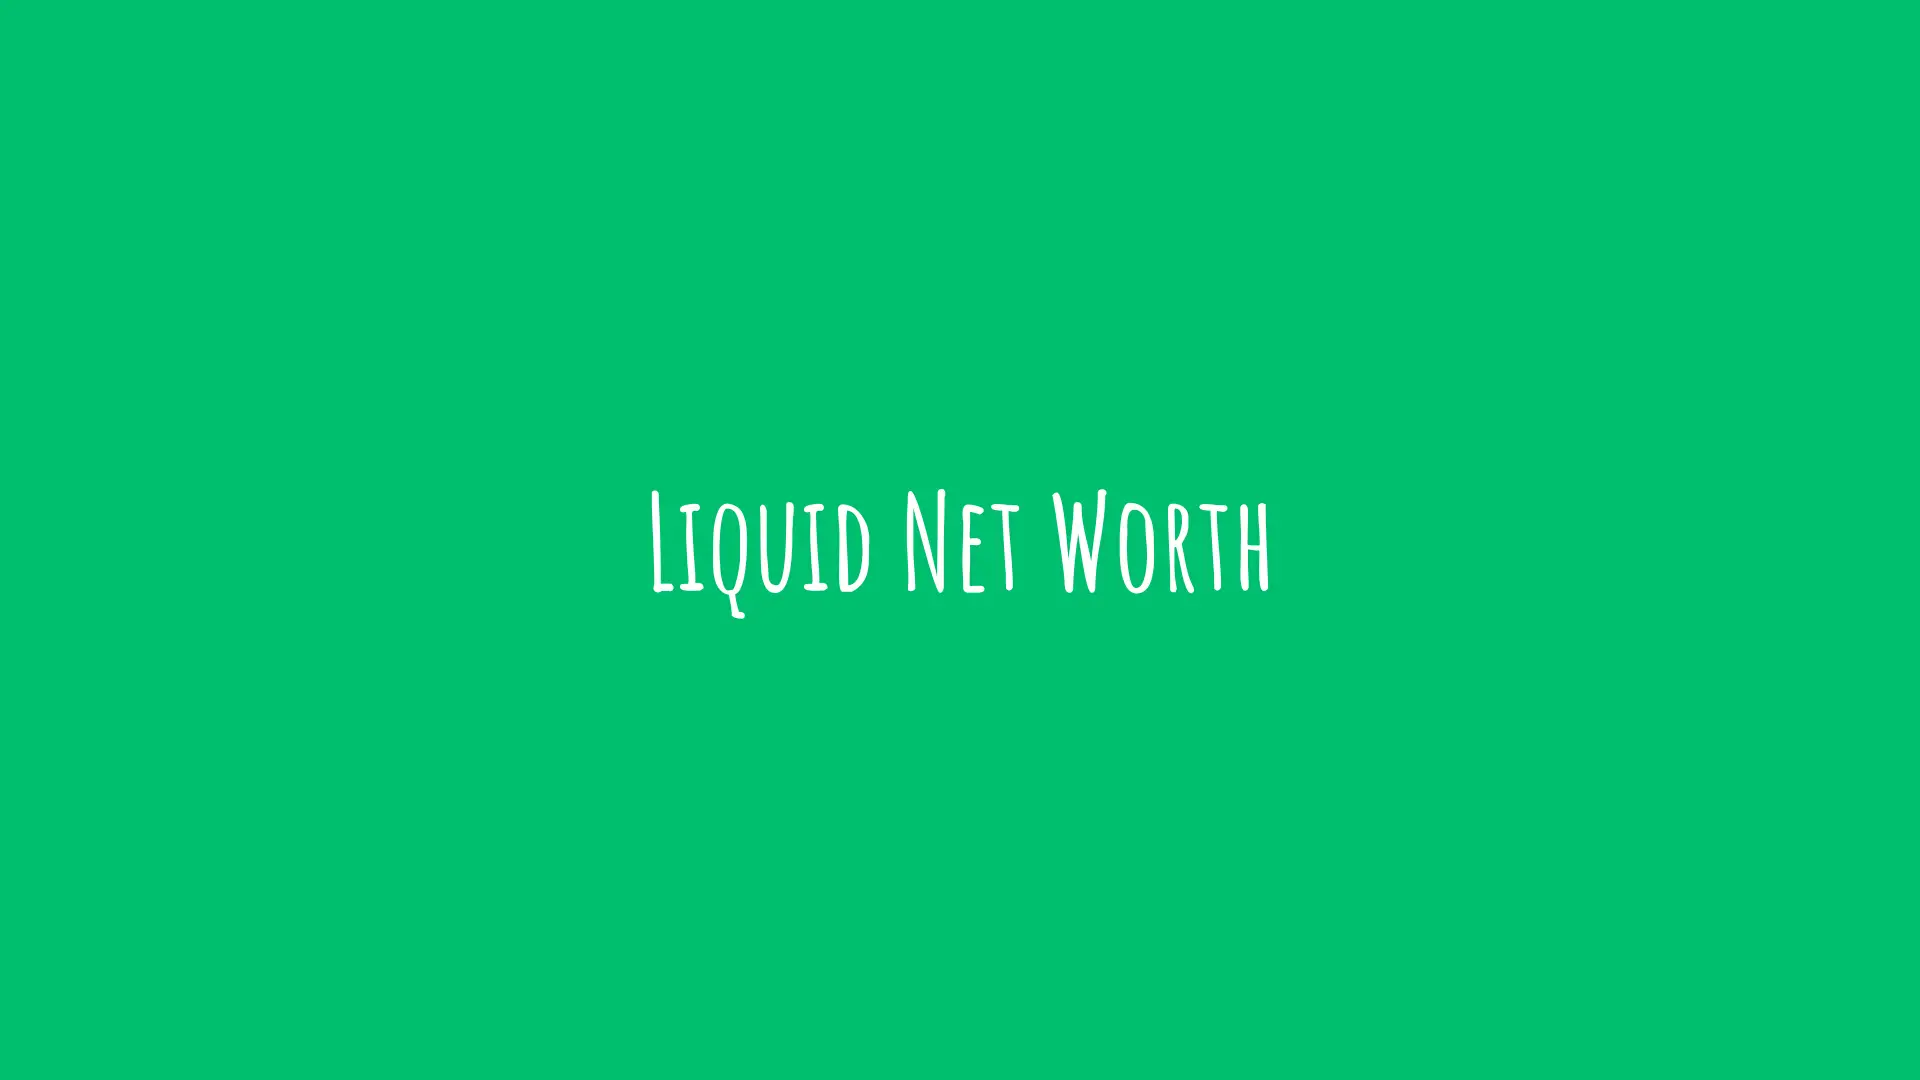 net worth vs. liquid net worth